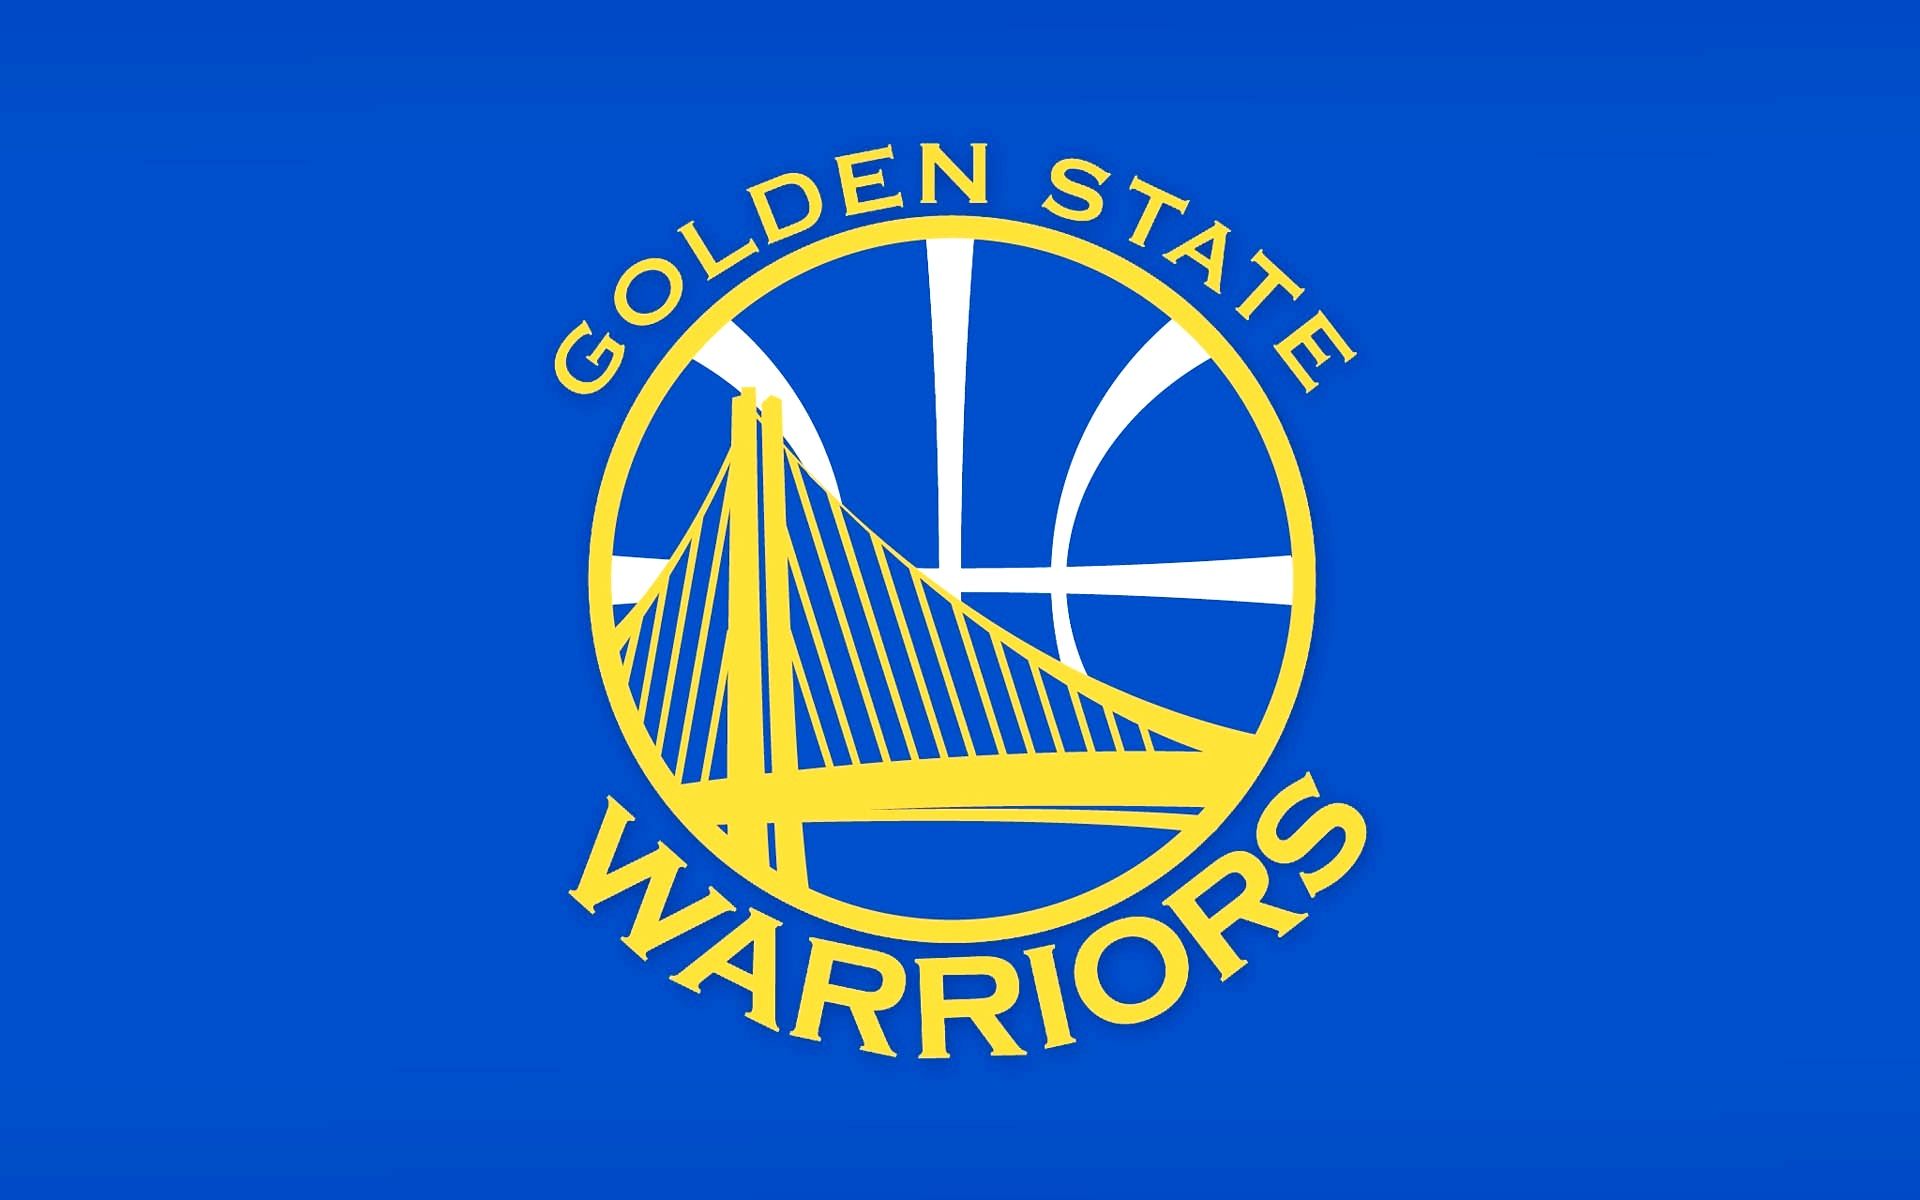 Golden State Warriors Logo Wallpaper Basketball Team NBA to Days